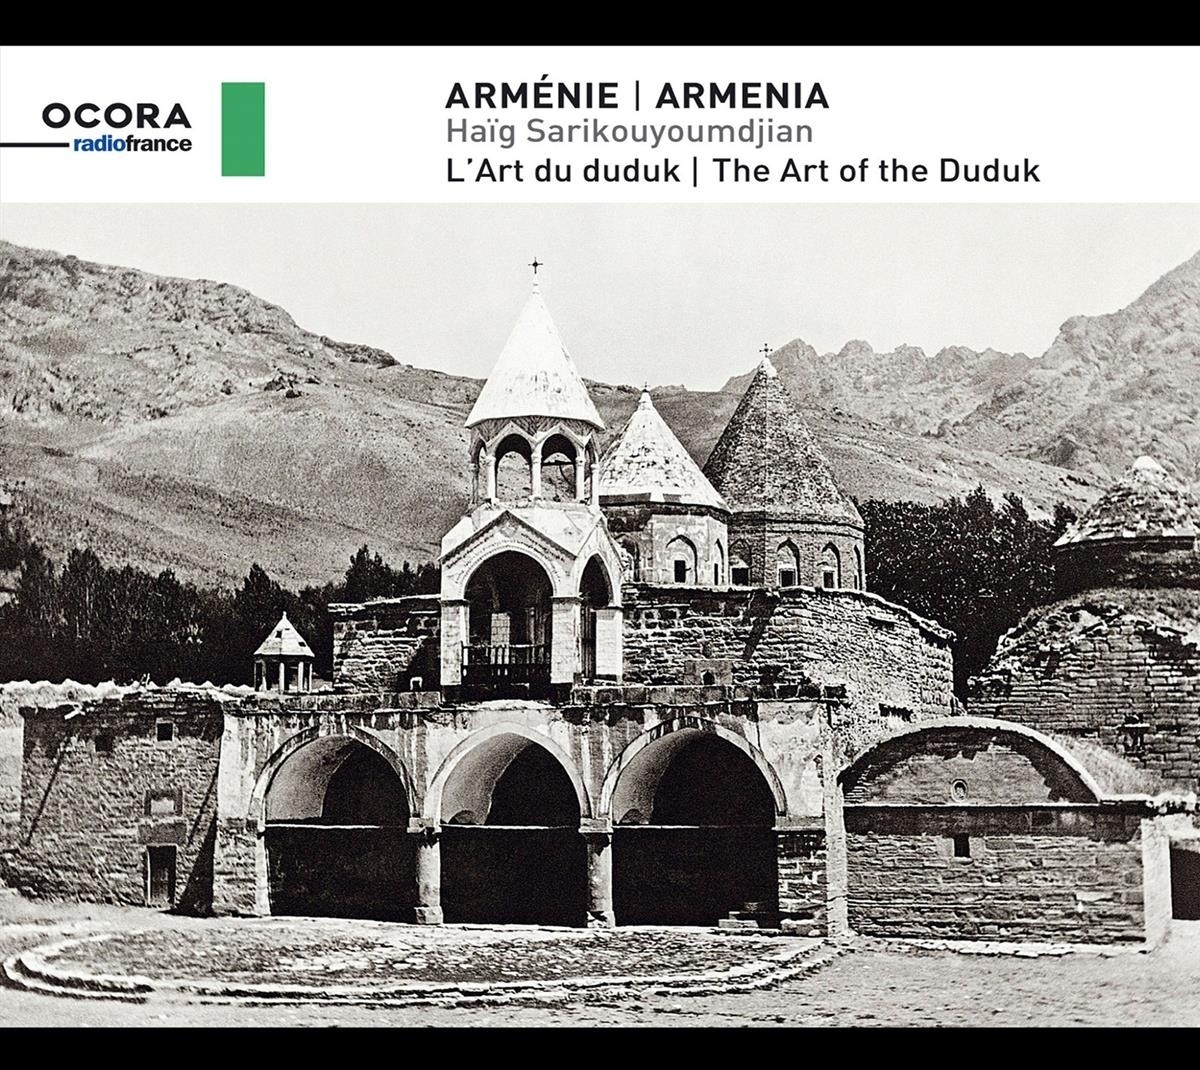 Armenia: The Art Of The Duduk - Haig Sarikouyoumdjian. (CD)